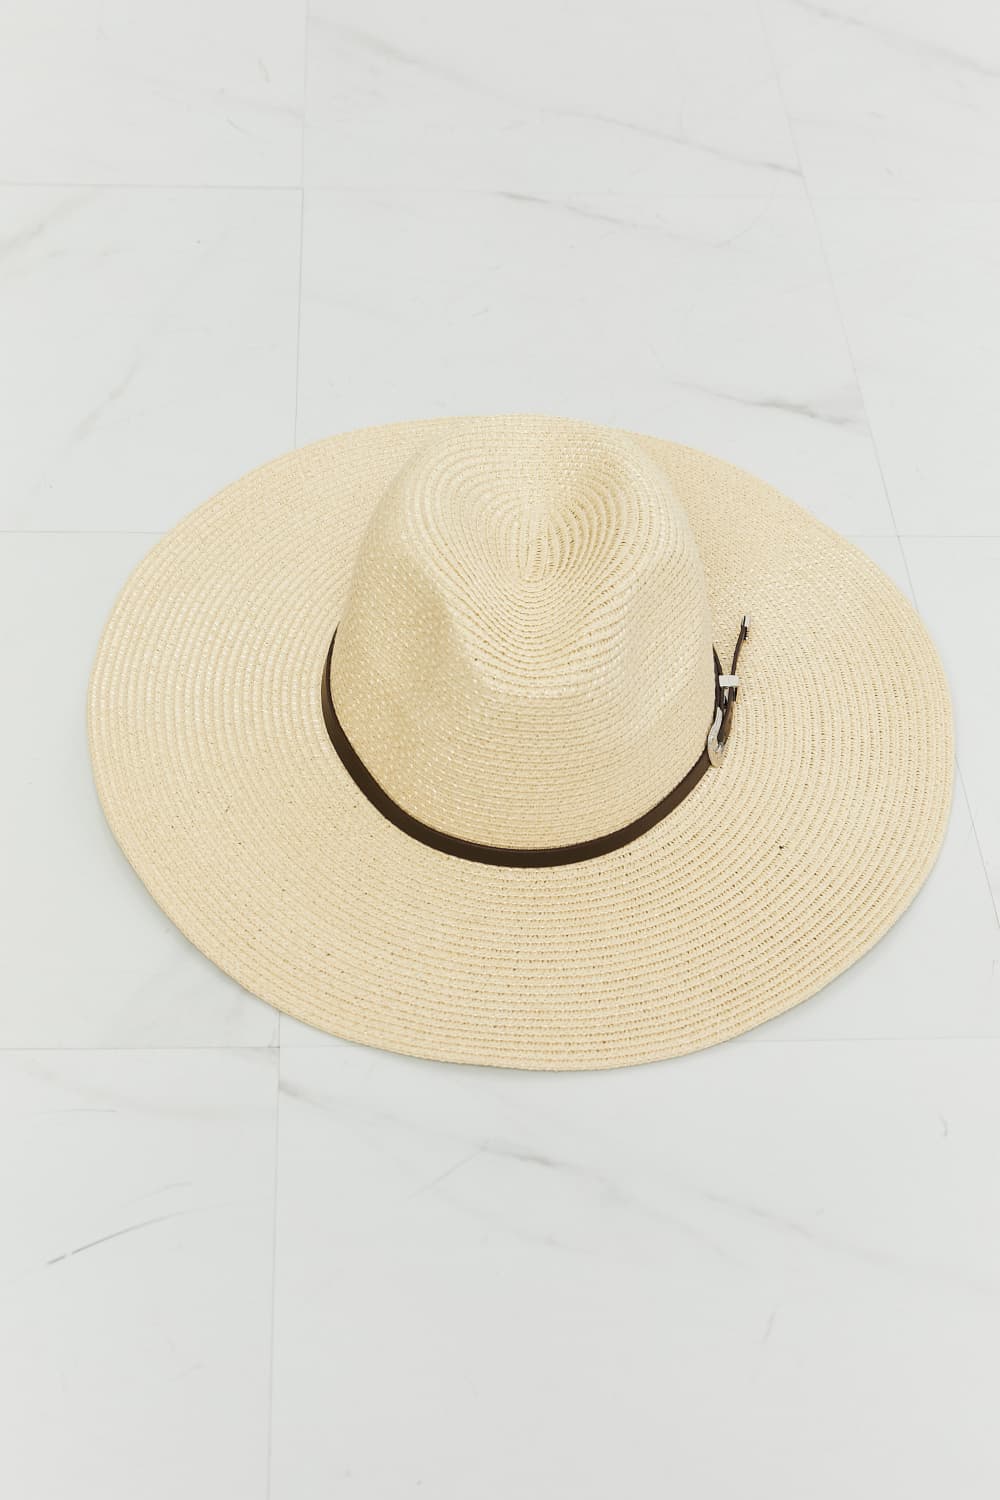 Boho Summer Straw Fedora Hat Ivory One Size Hats by Vim&Vigor | Vim&Vigor Boutique